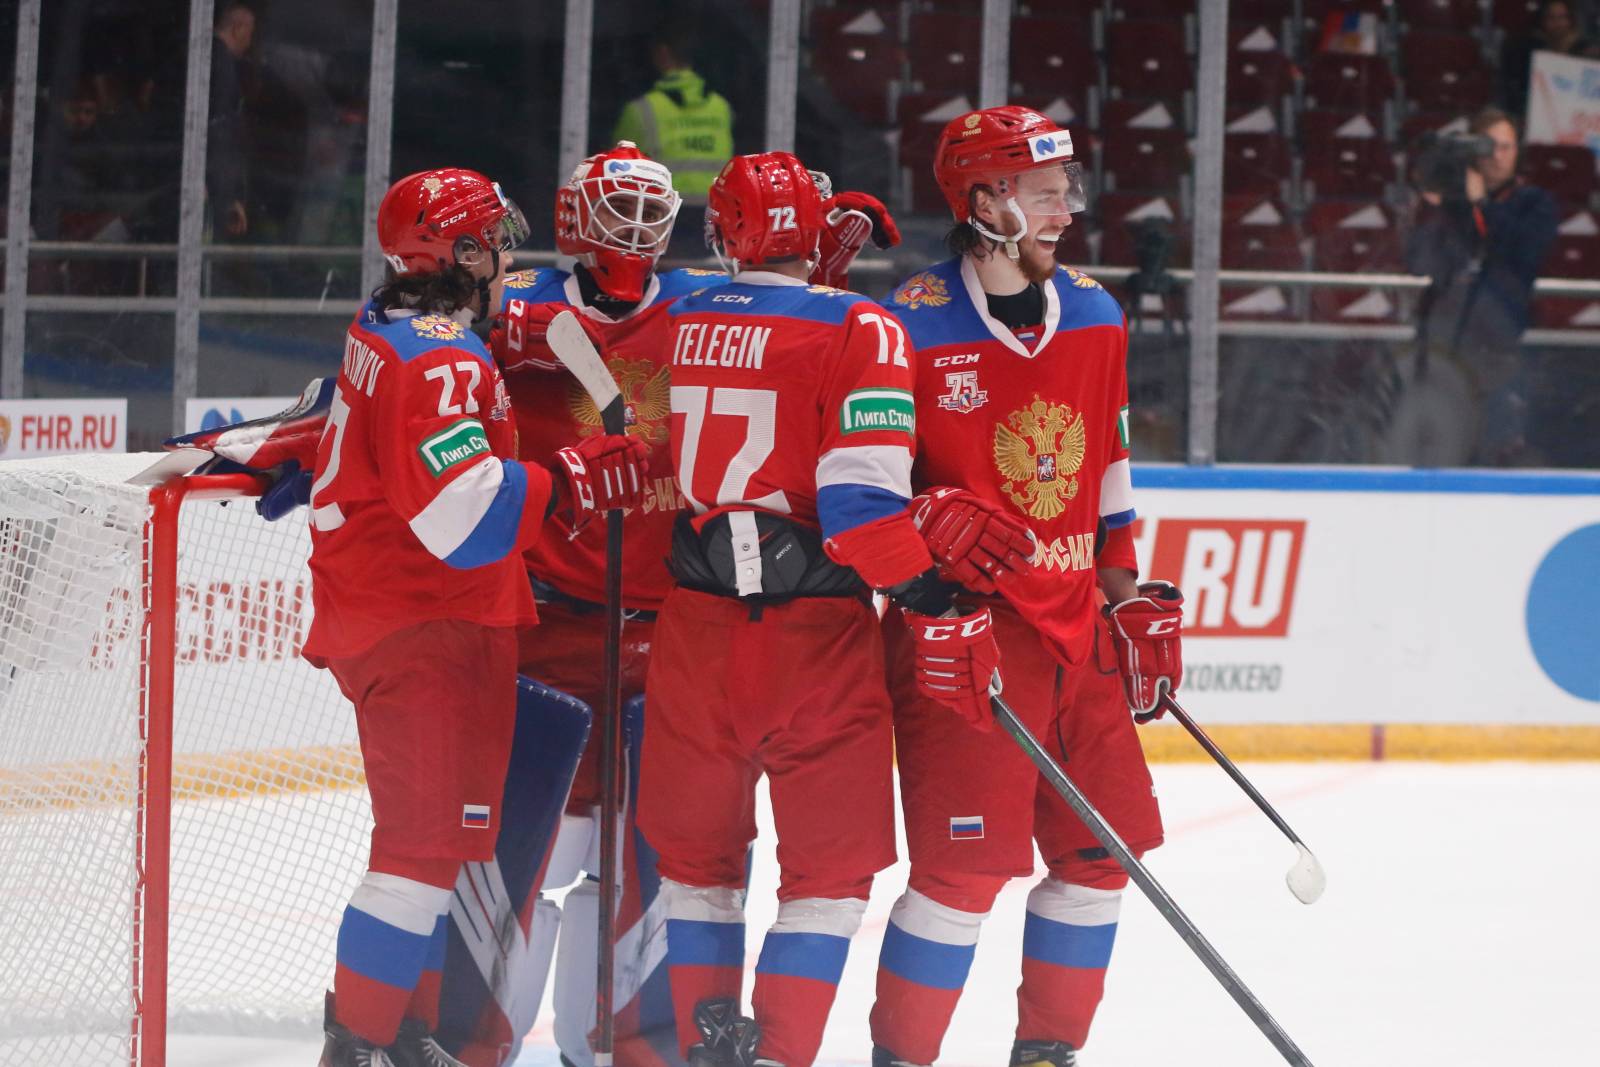 Сборная России по хоккею будет играть в высшем дивизионе после снятия санкций